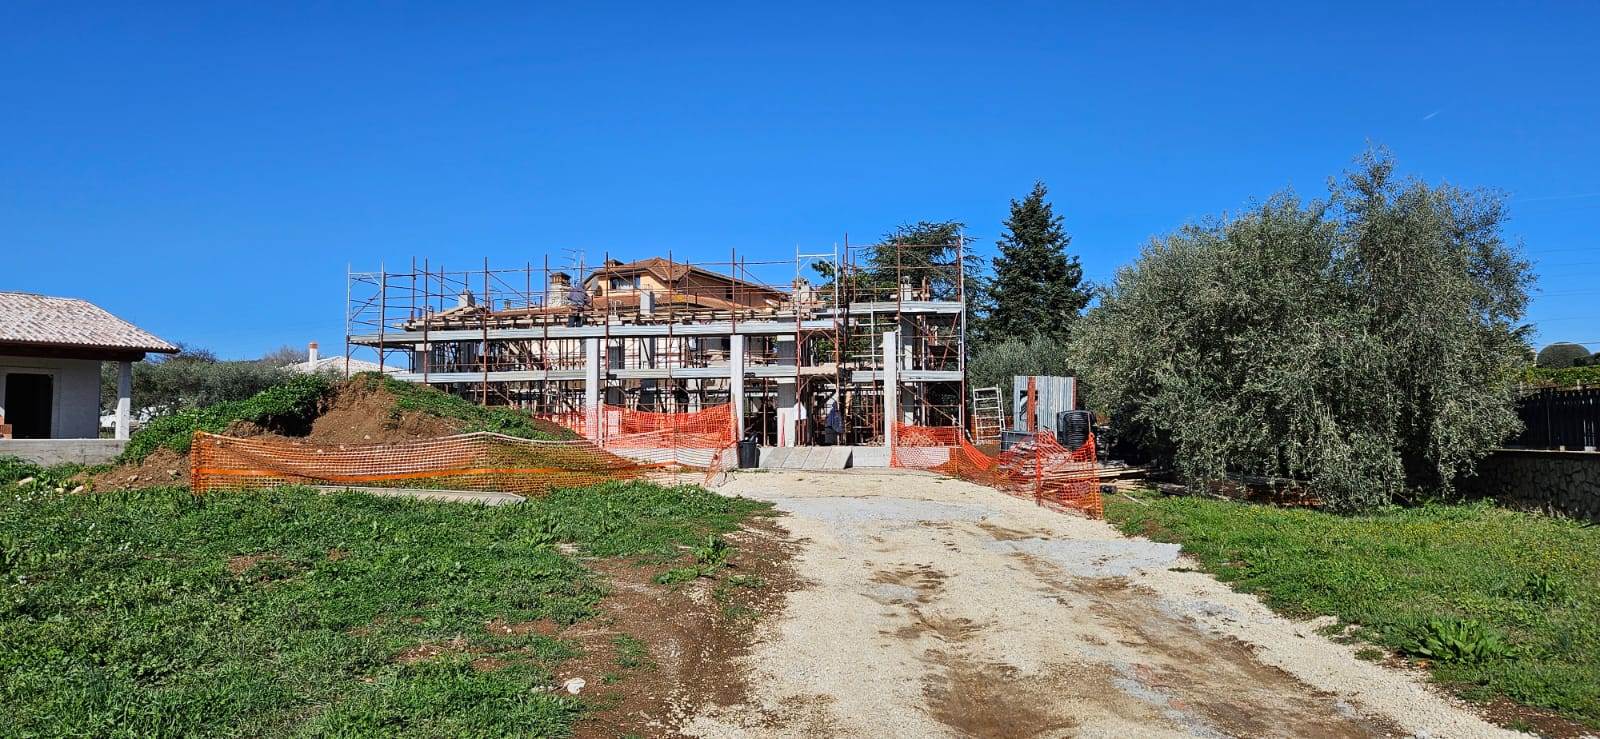 Rustico casale in nuova costruzione a Fiano Romano